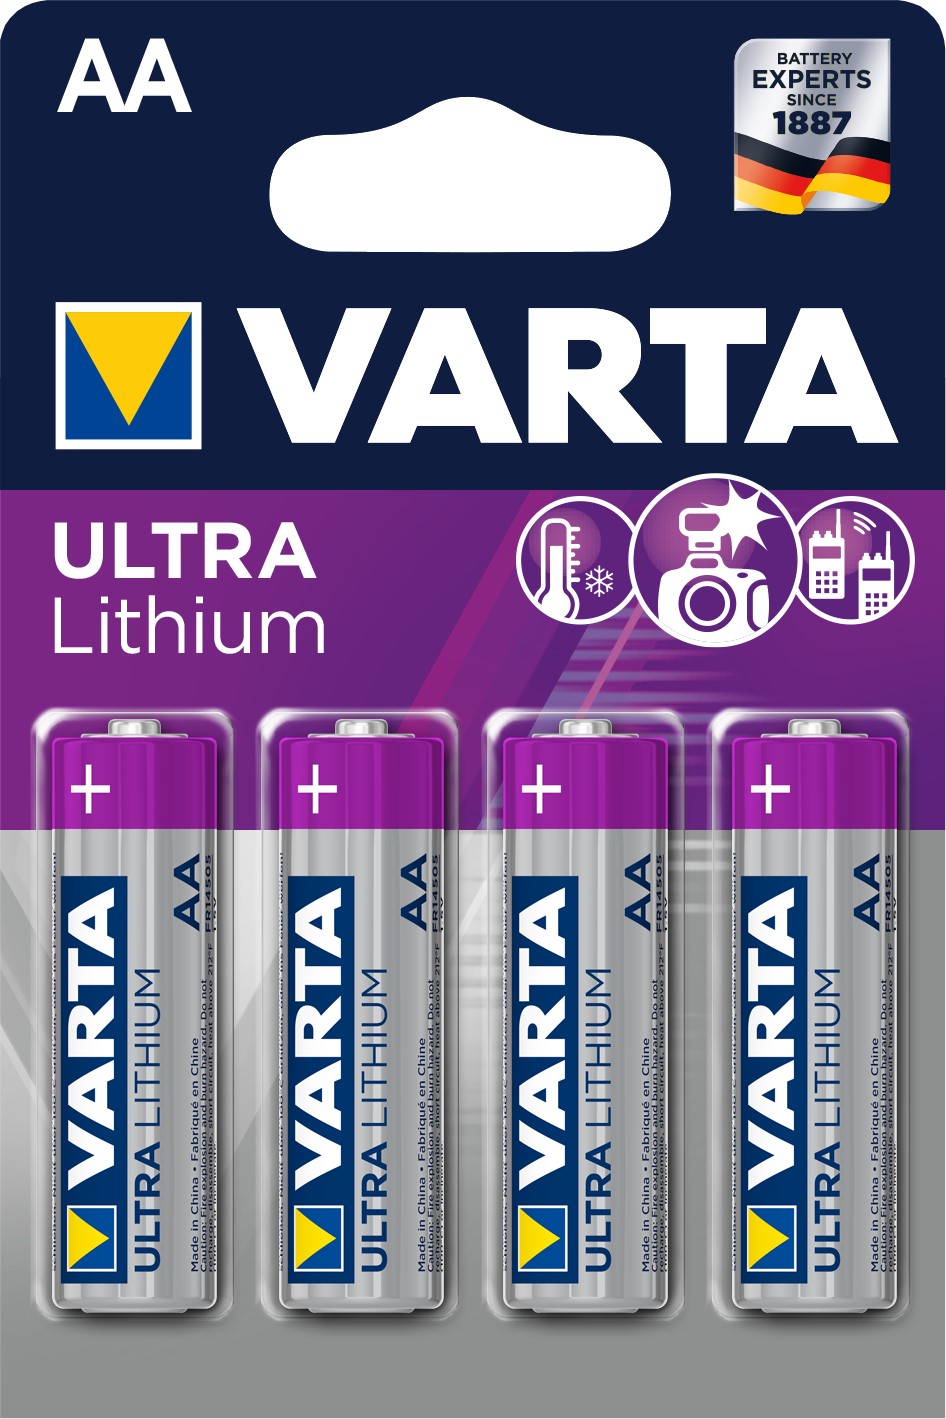 VARTA AA x4 Pile lithium 1,5V VARTA